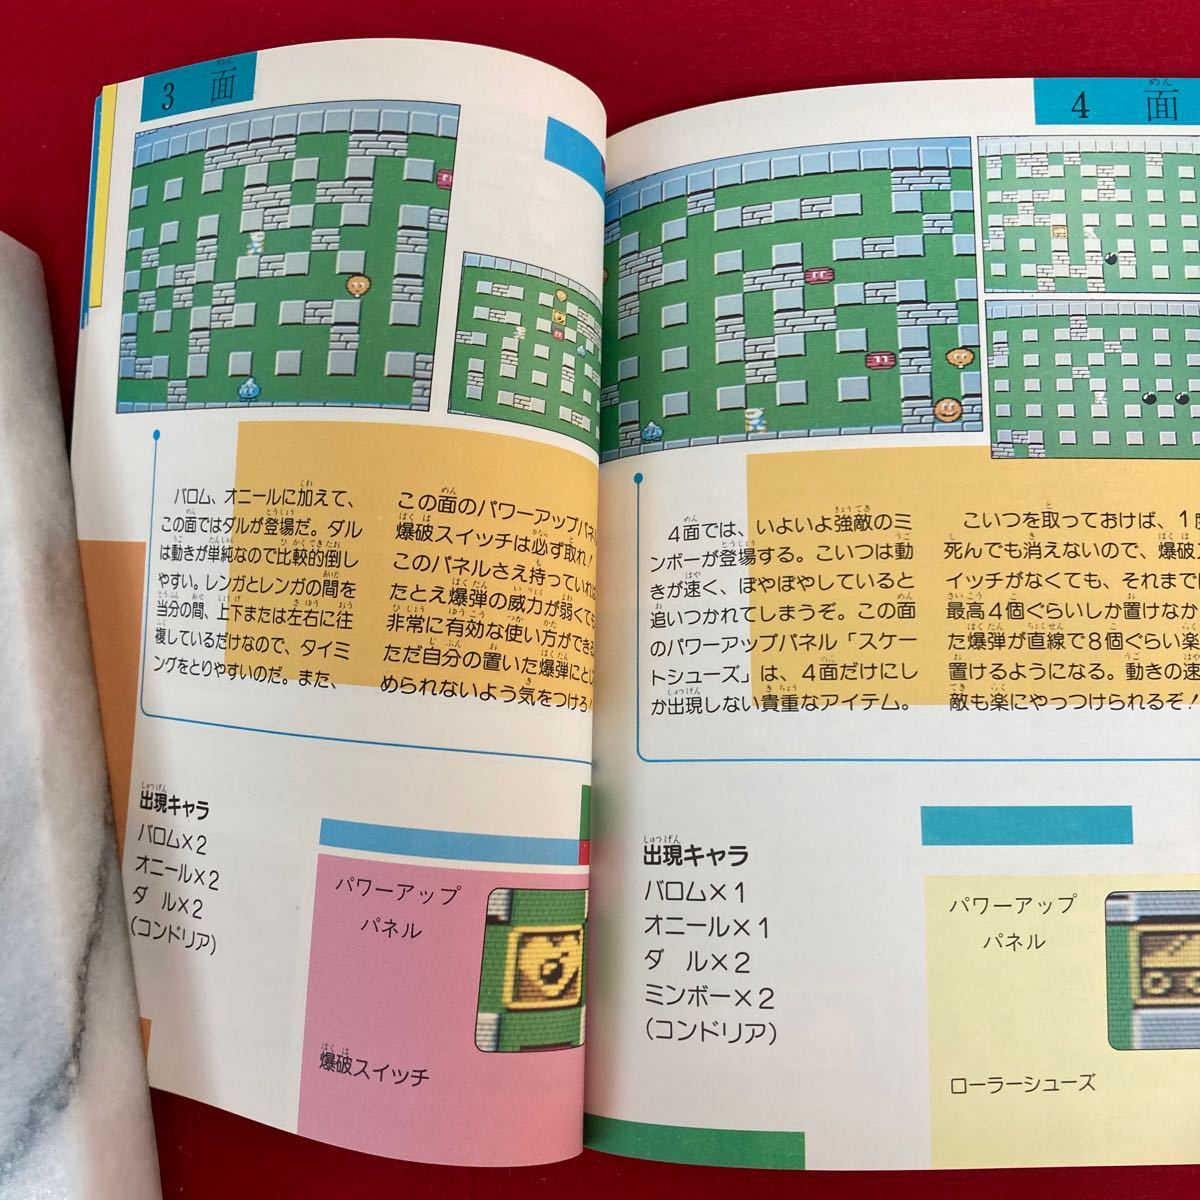 i-329 ボンバーマン ファミリーコンピュータ スーパーテクニックマニュアル 1986年4月30日初版発行 朝日ソノラマ レトロゲーム 攻略本 ※8_画像6